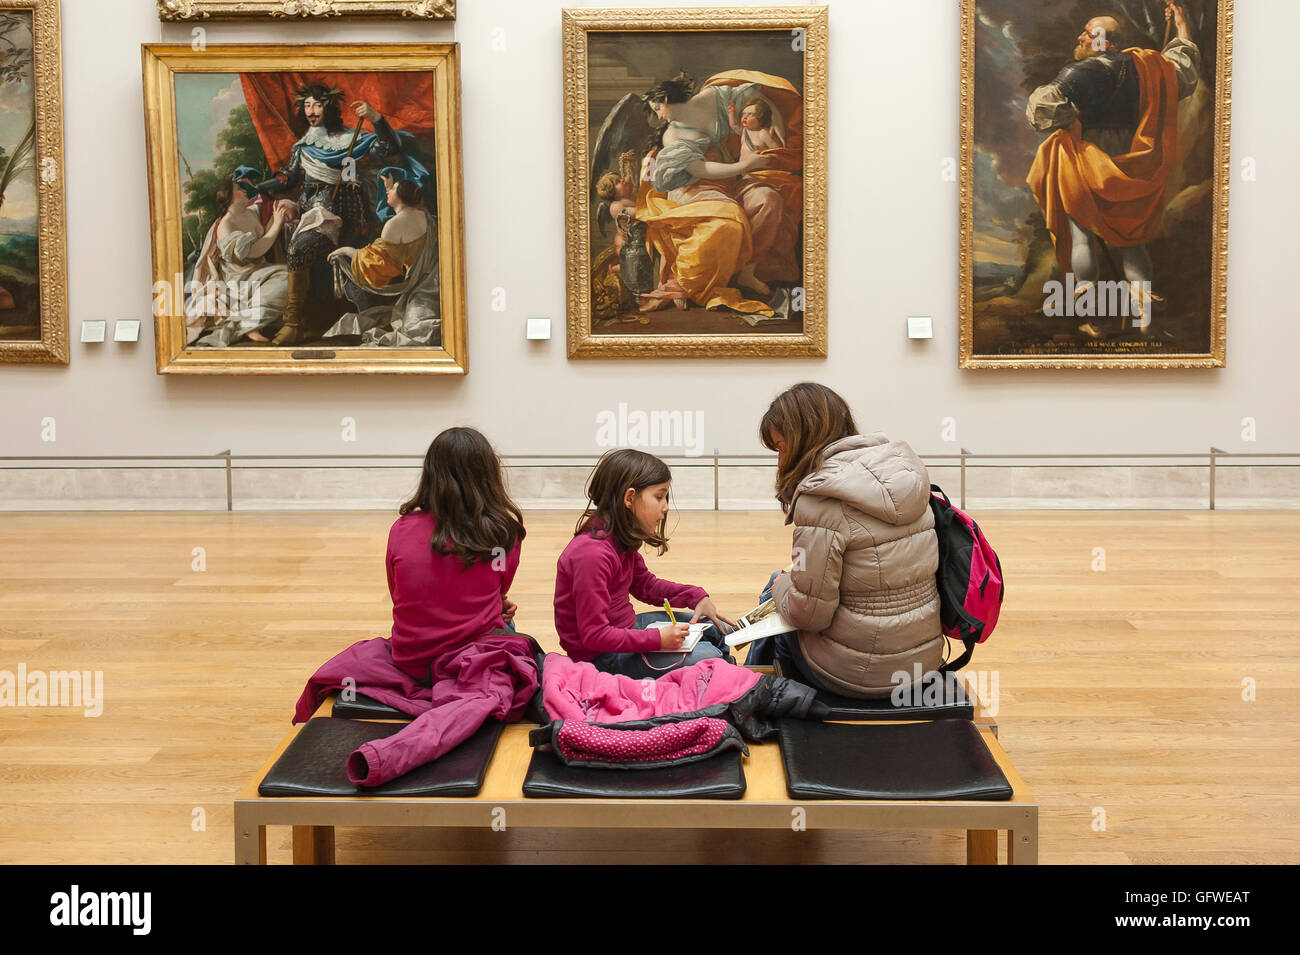 Kinder Kunst Galerie, eine Mutter und ihre zwei Töchter Ansicht aus dem 17. Jahrhundert Kunst Gemälde im Louvre in Paris, Frankreich. Stockfoto